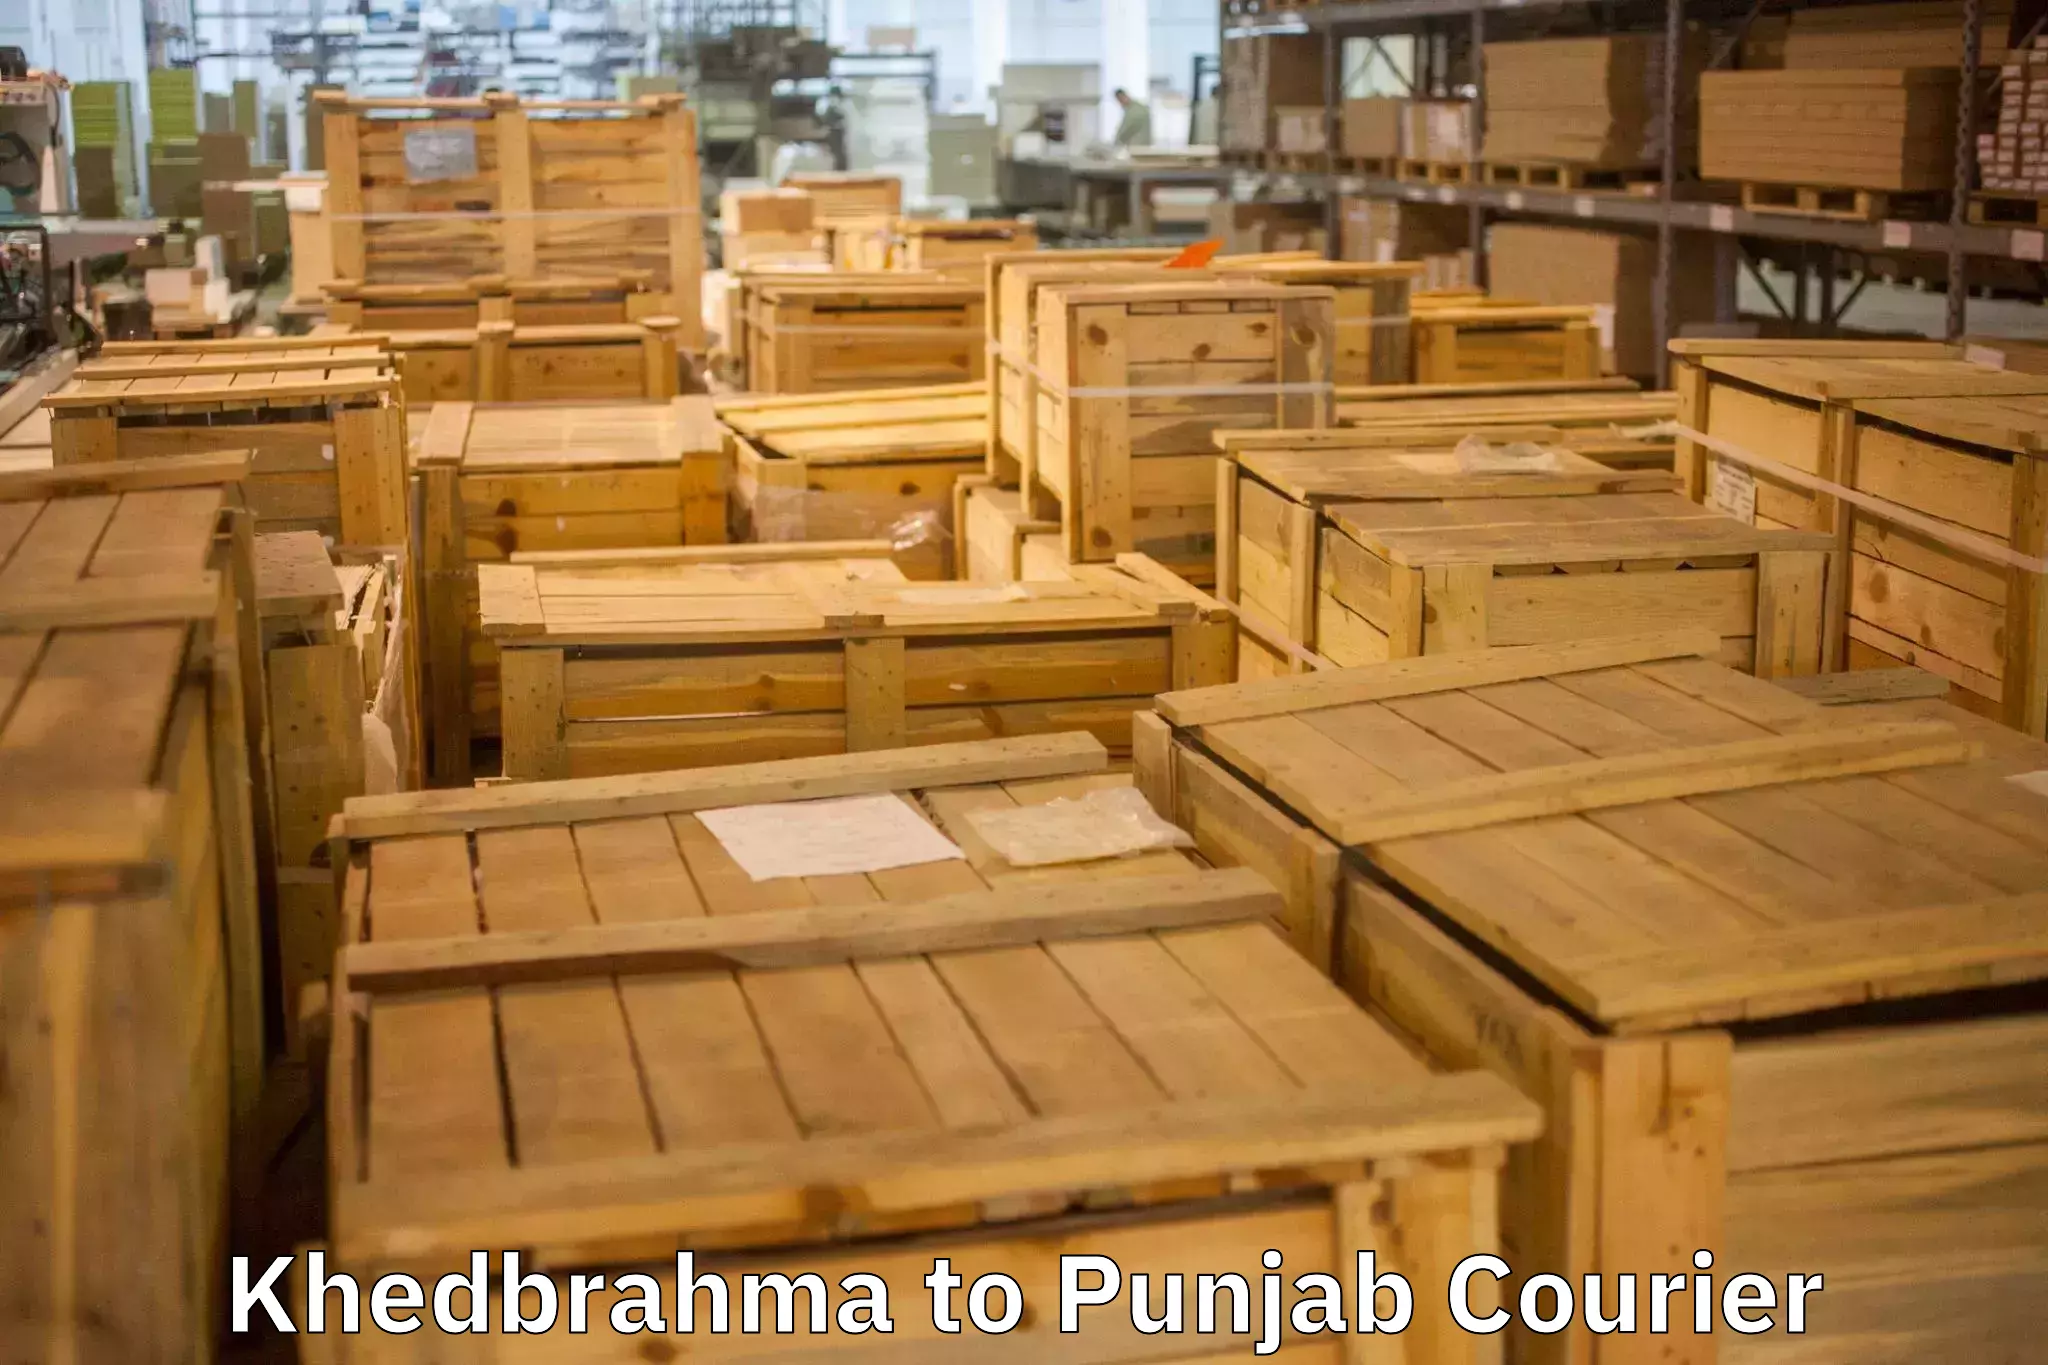 Efficient moving company Khedbrahma to Jalandhar